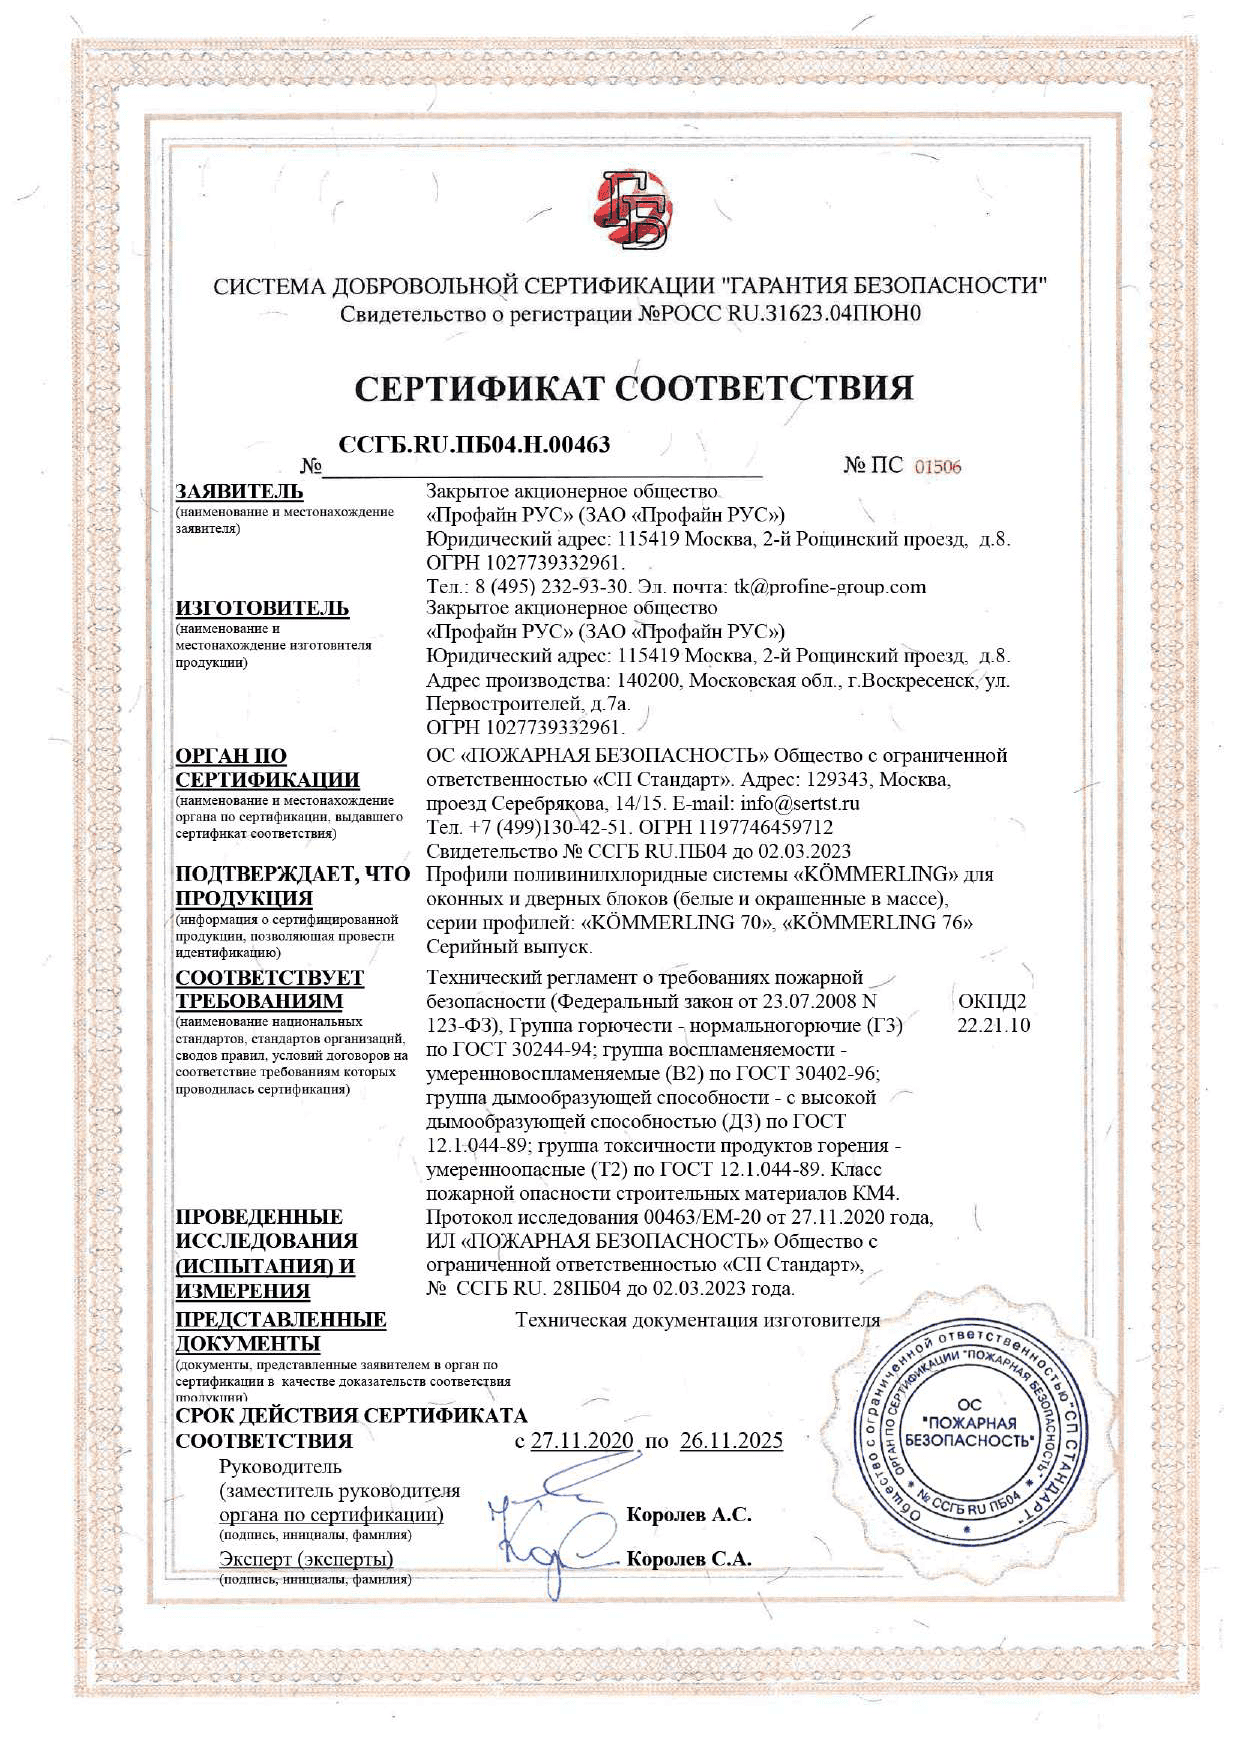 “Гарантия безопасности” Сертификат соответствия